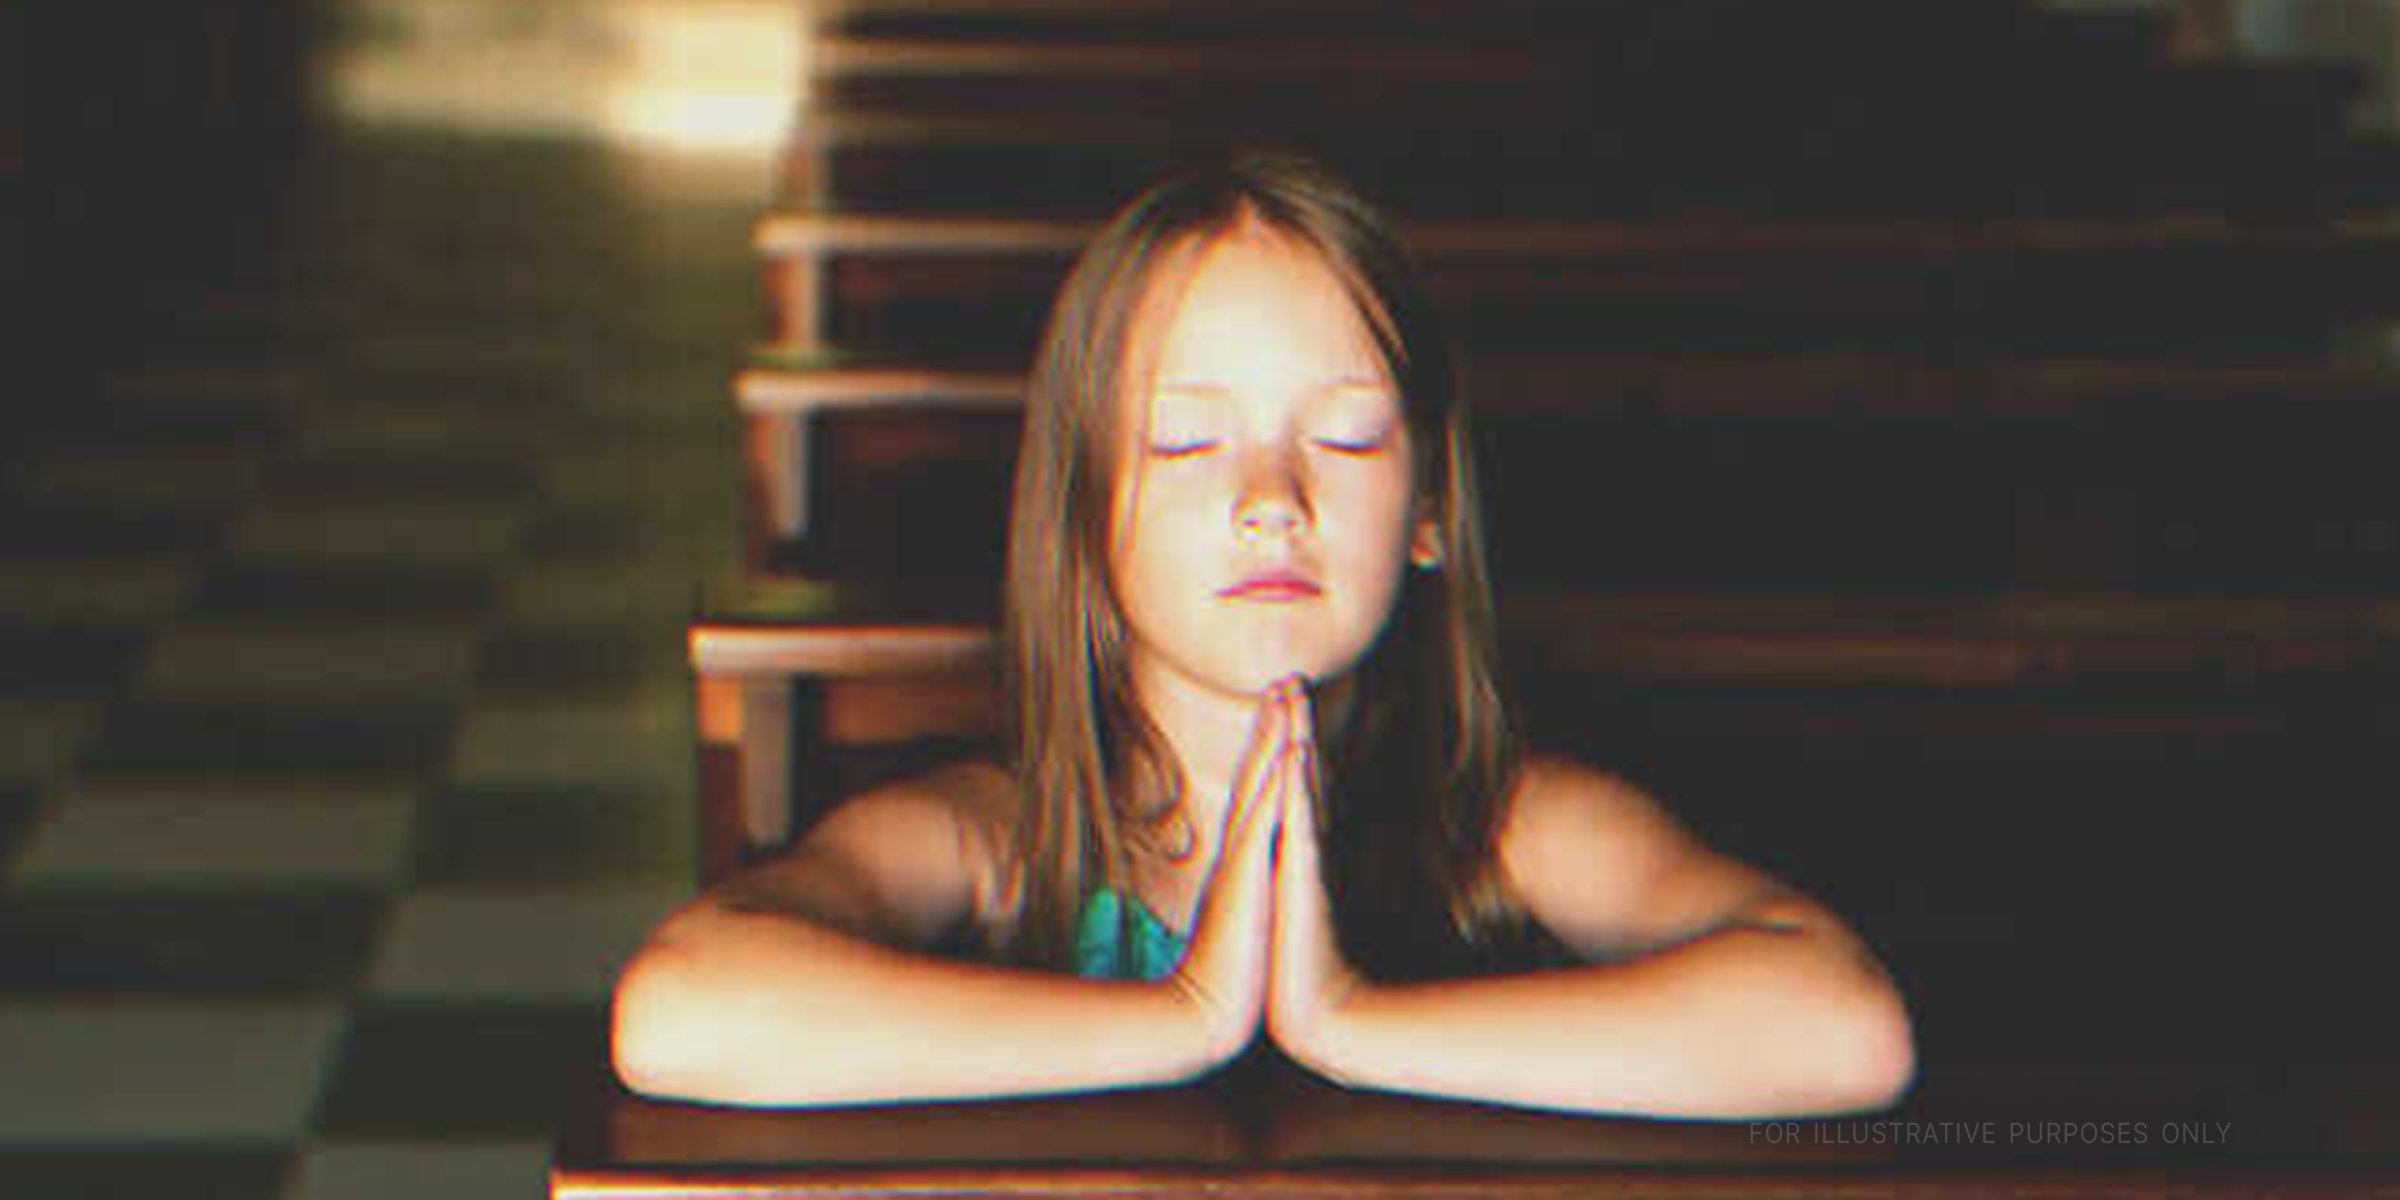 Little Girl Prays to God | Source: Shutterstock